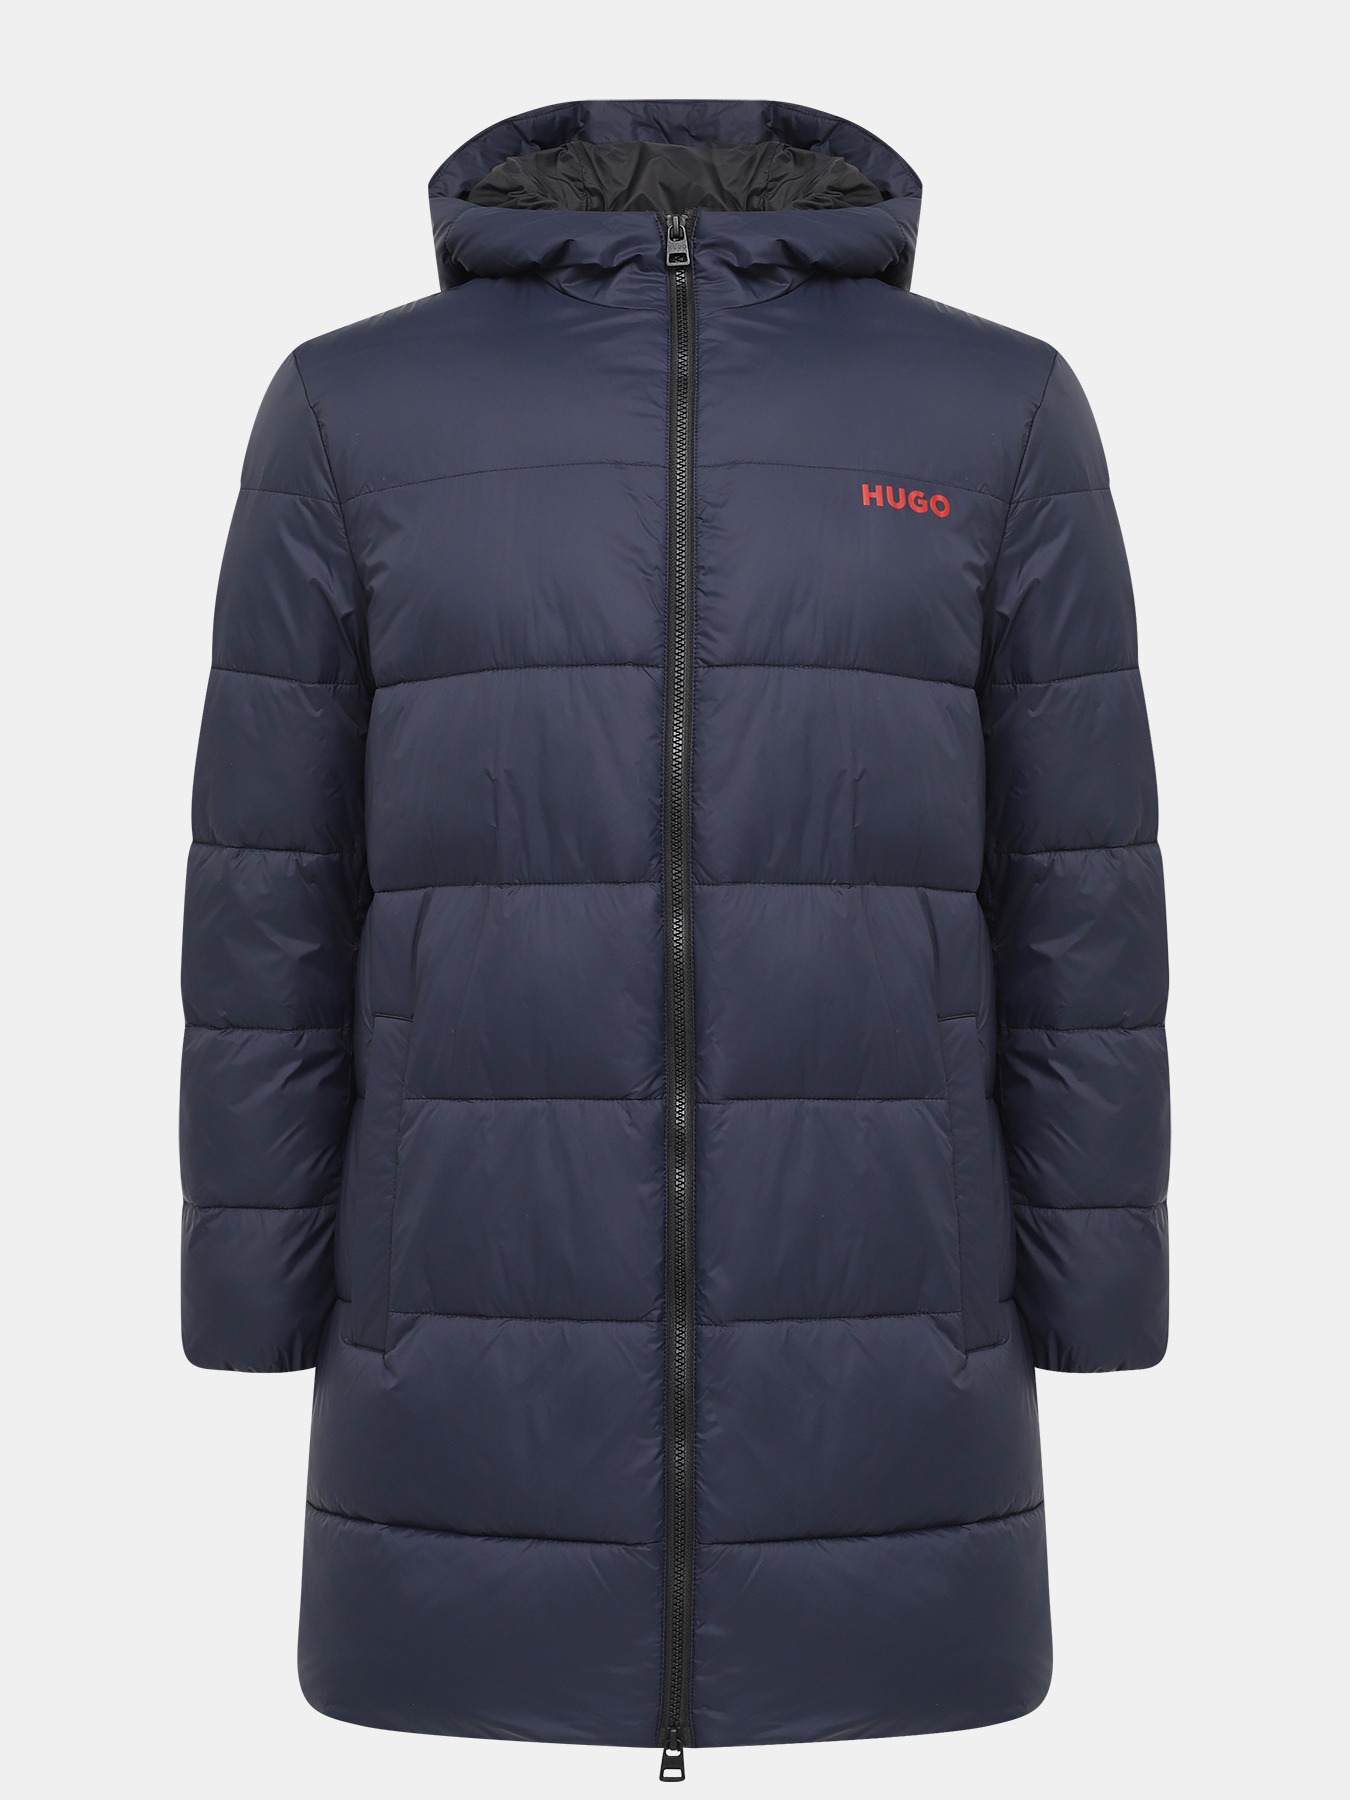 Удлиненная куртка Mati HUGO 426056-045, цвет темно-синий, размер 52-54 - фото 1